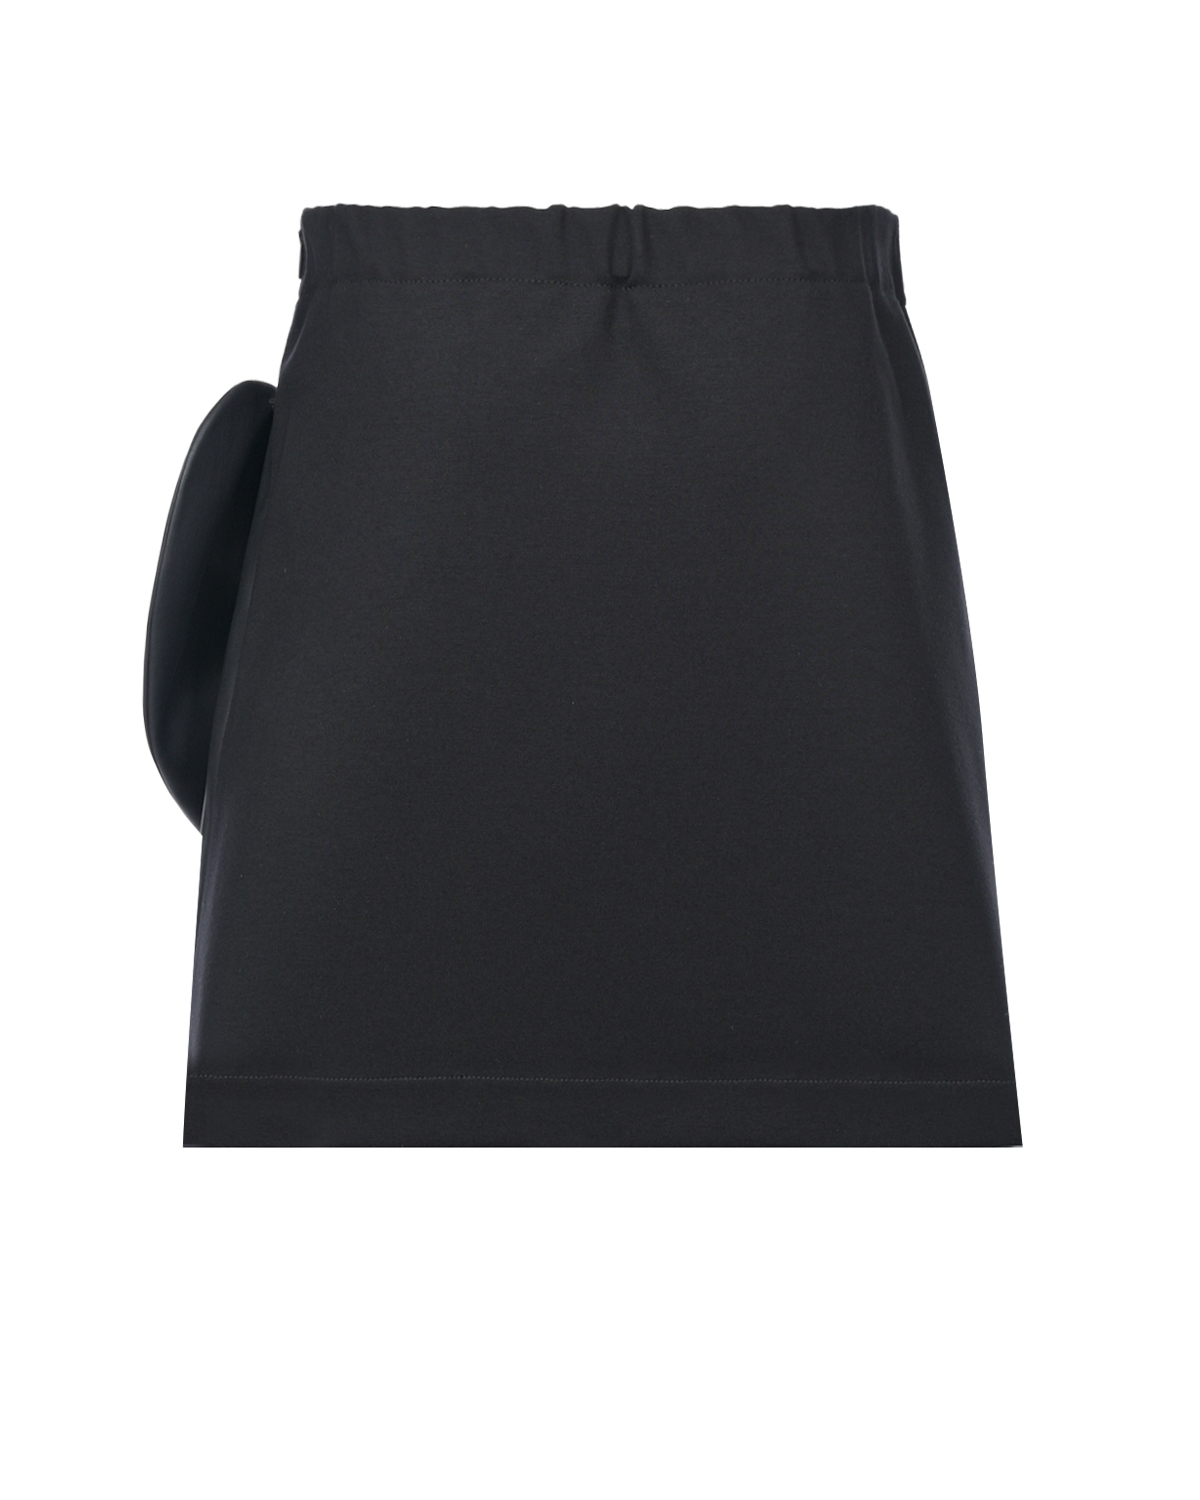 Черная юбка из эко-кожи с бантом Miss Blumarine детская, размер 140, цвет черный - фото 2